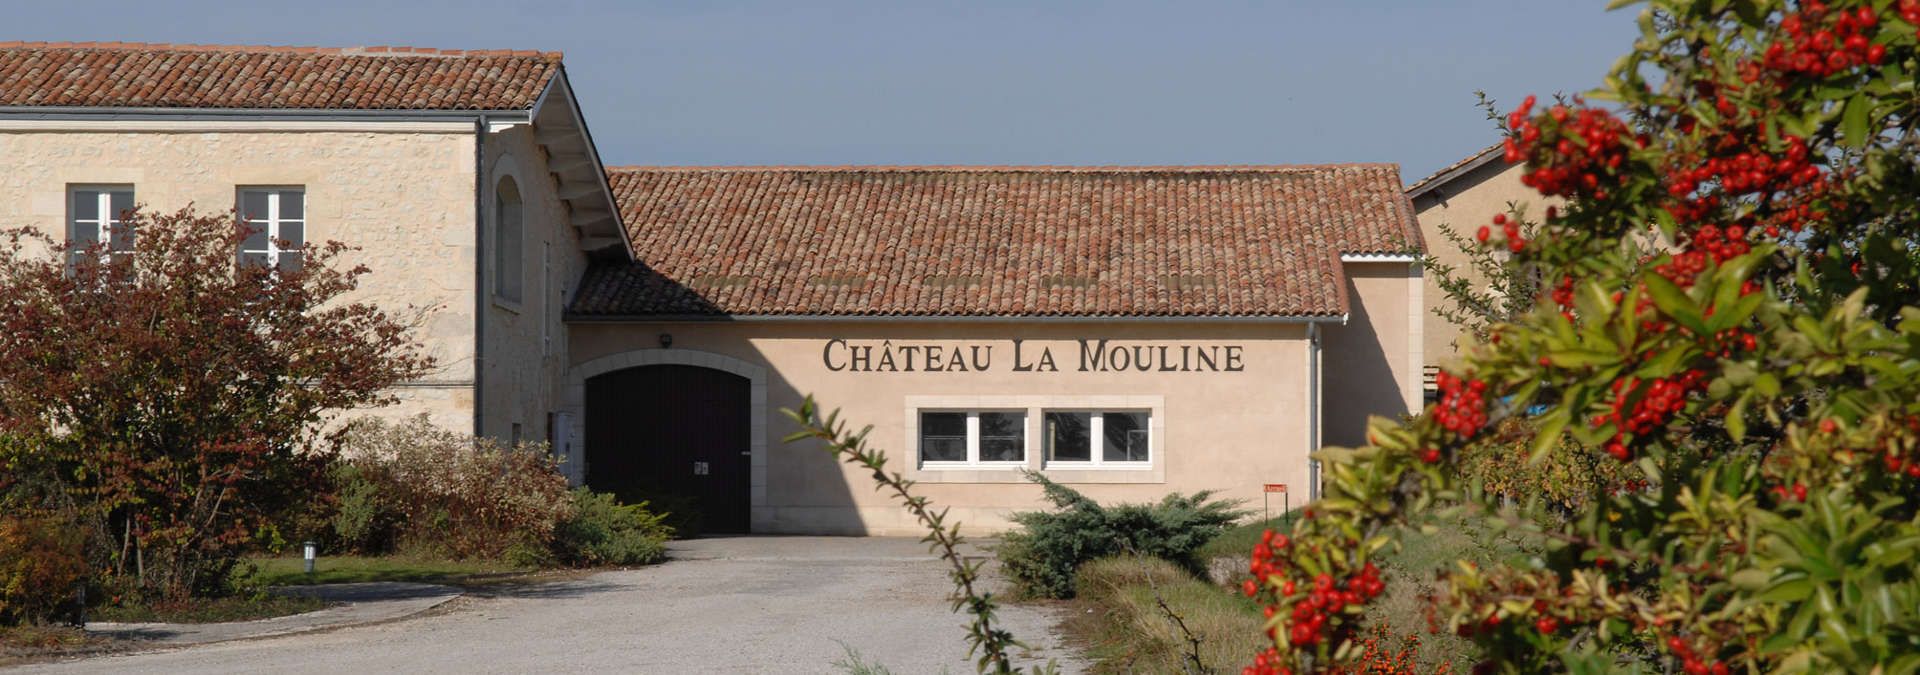 Château La Mouline - Rue des Vignerons